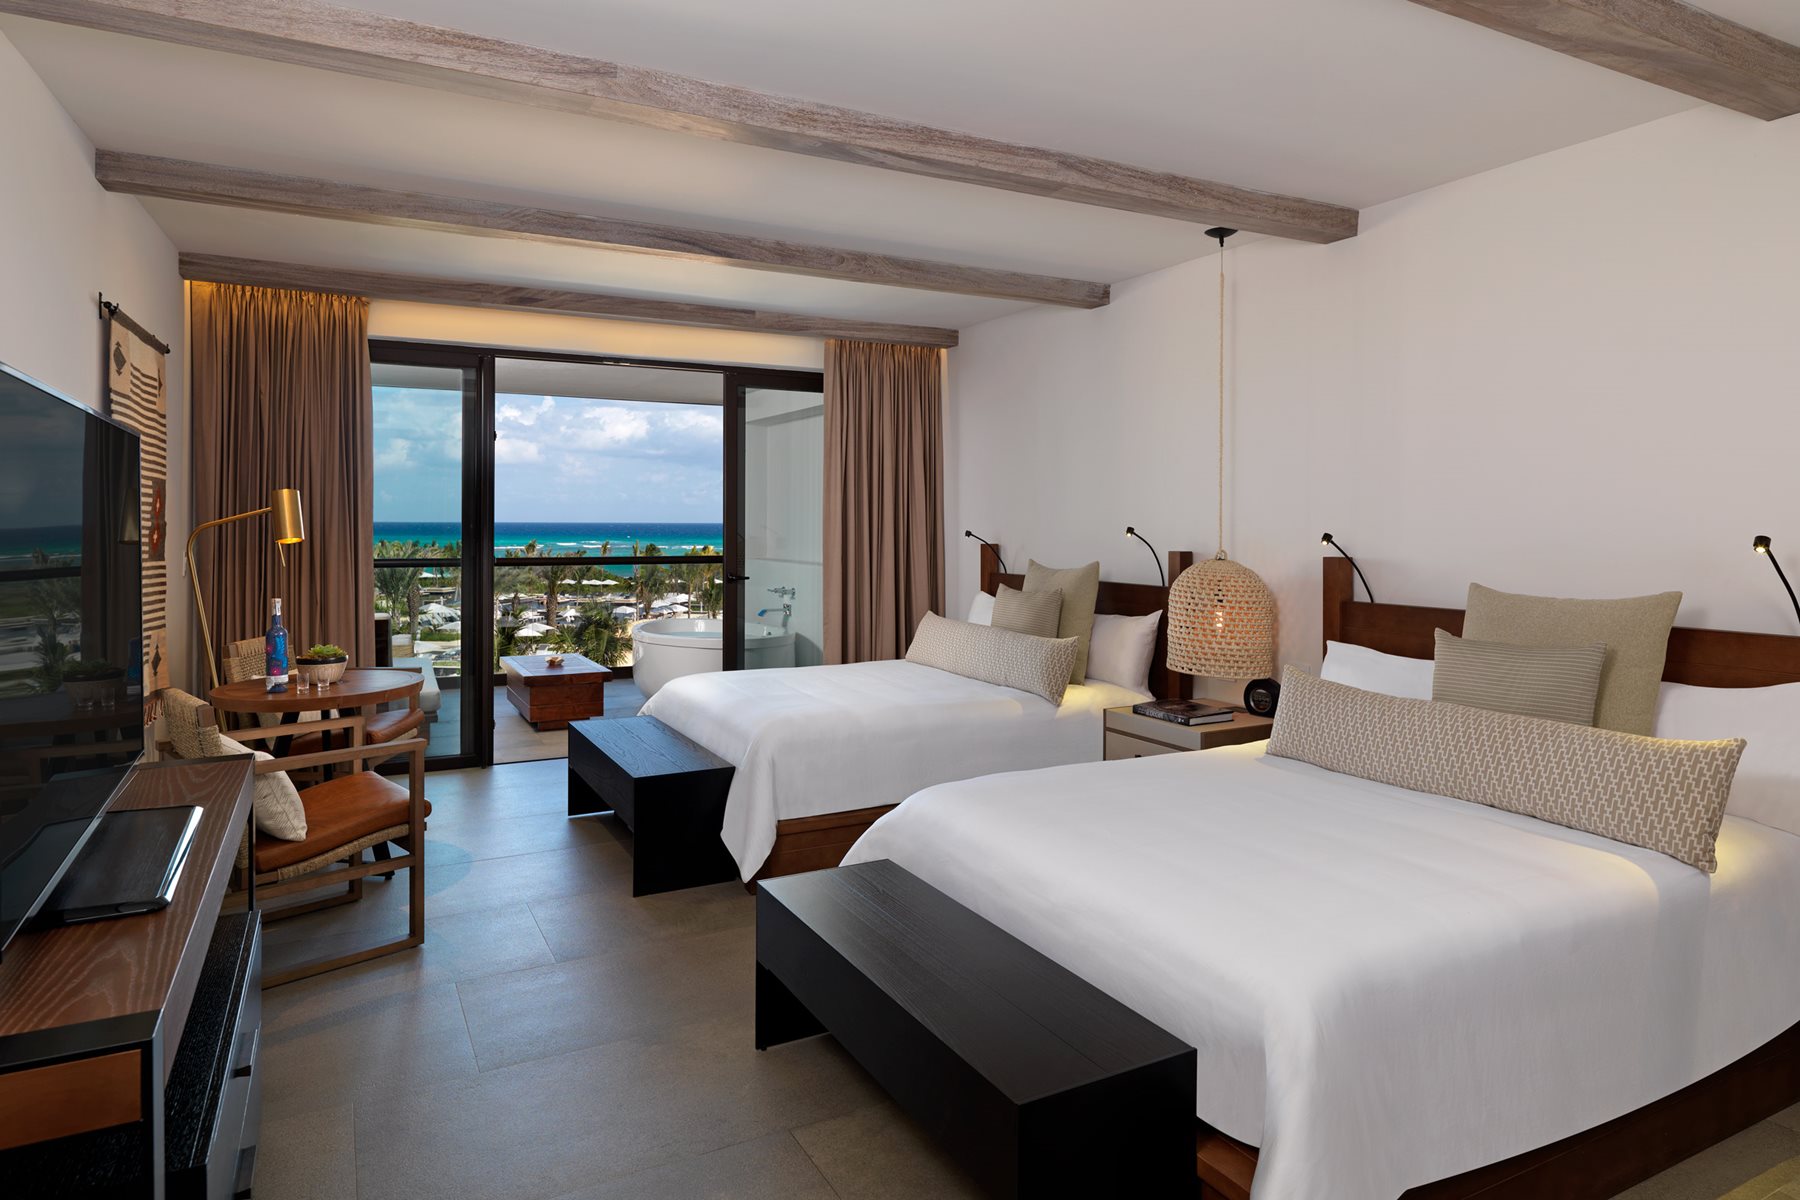 Riv unico hotel riviera maya room alcoba ocean view double 002